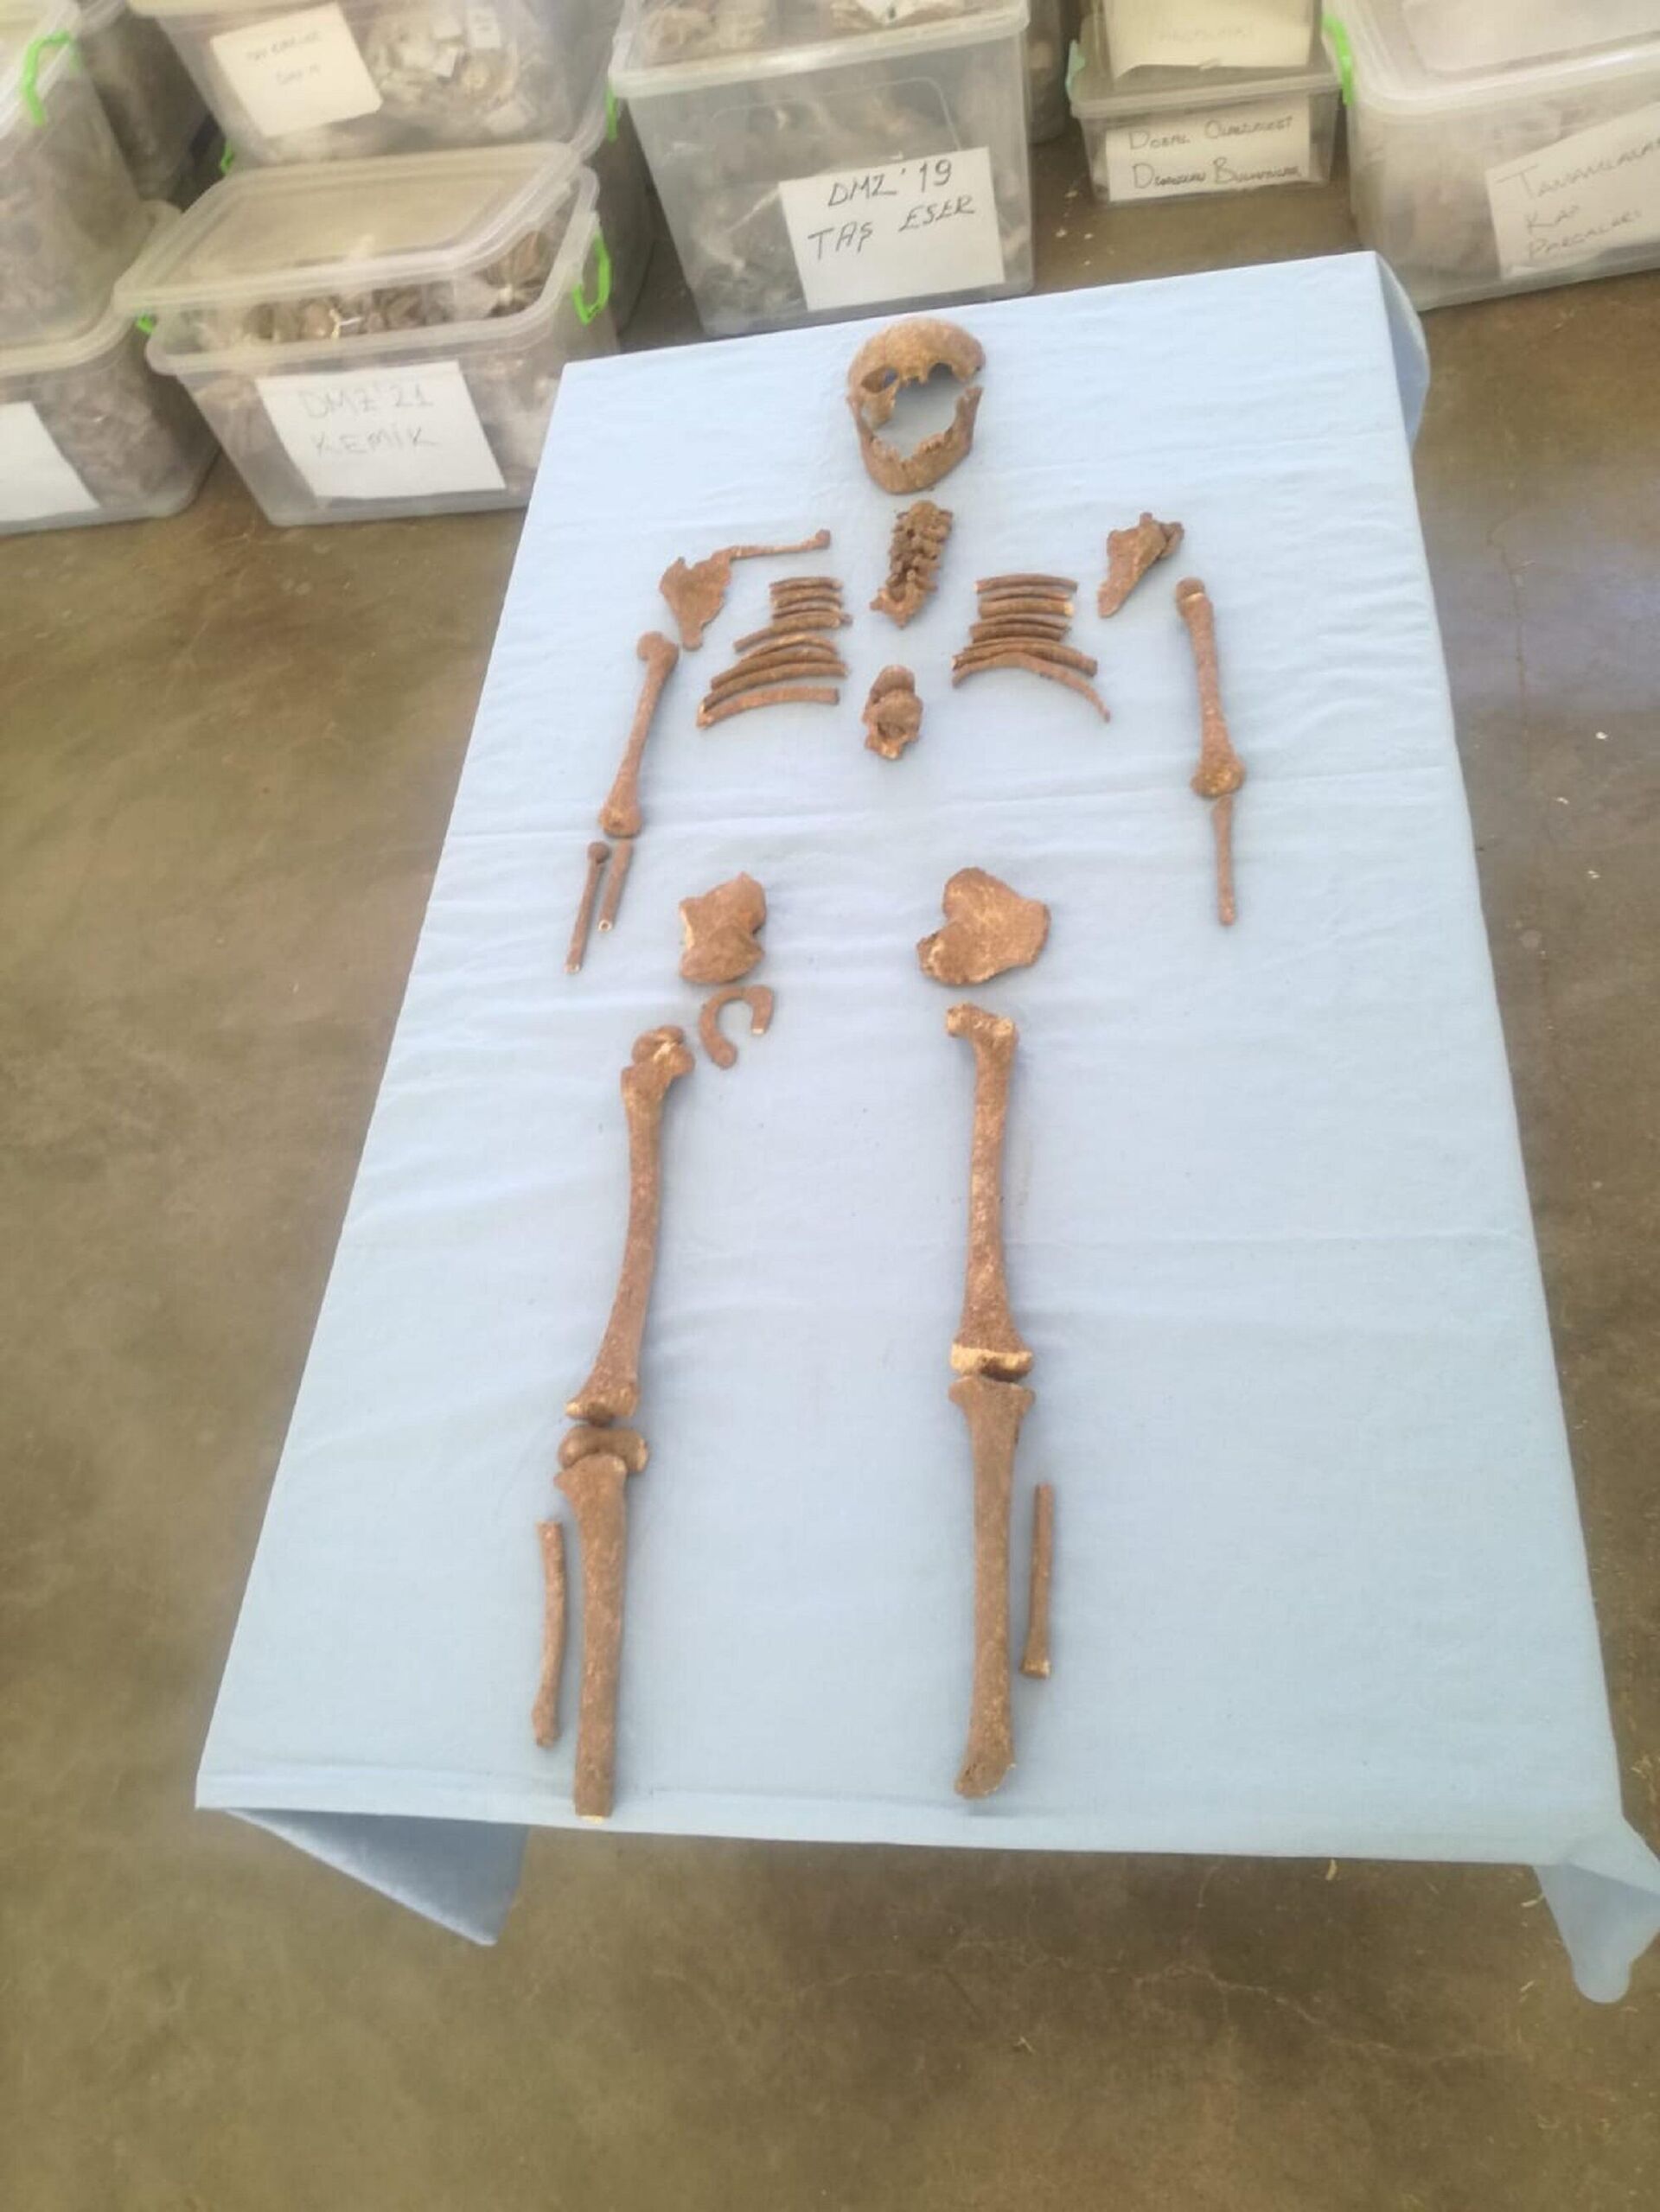 Domuztepe Höyüğü'nde Orta Çağ Dönemi'ne ait çocuk iskeleti bulundu - Sputnik Türkiye, 1920, 20.09.2021